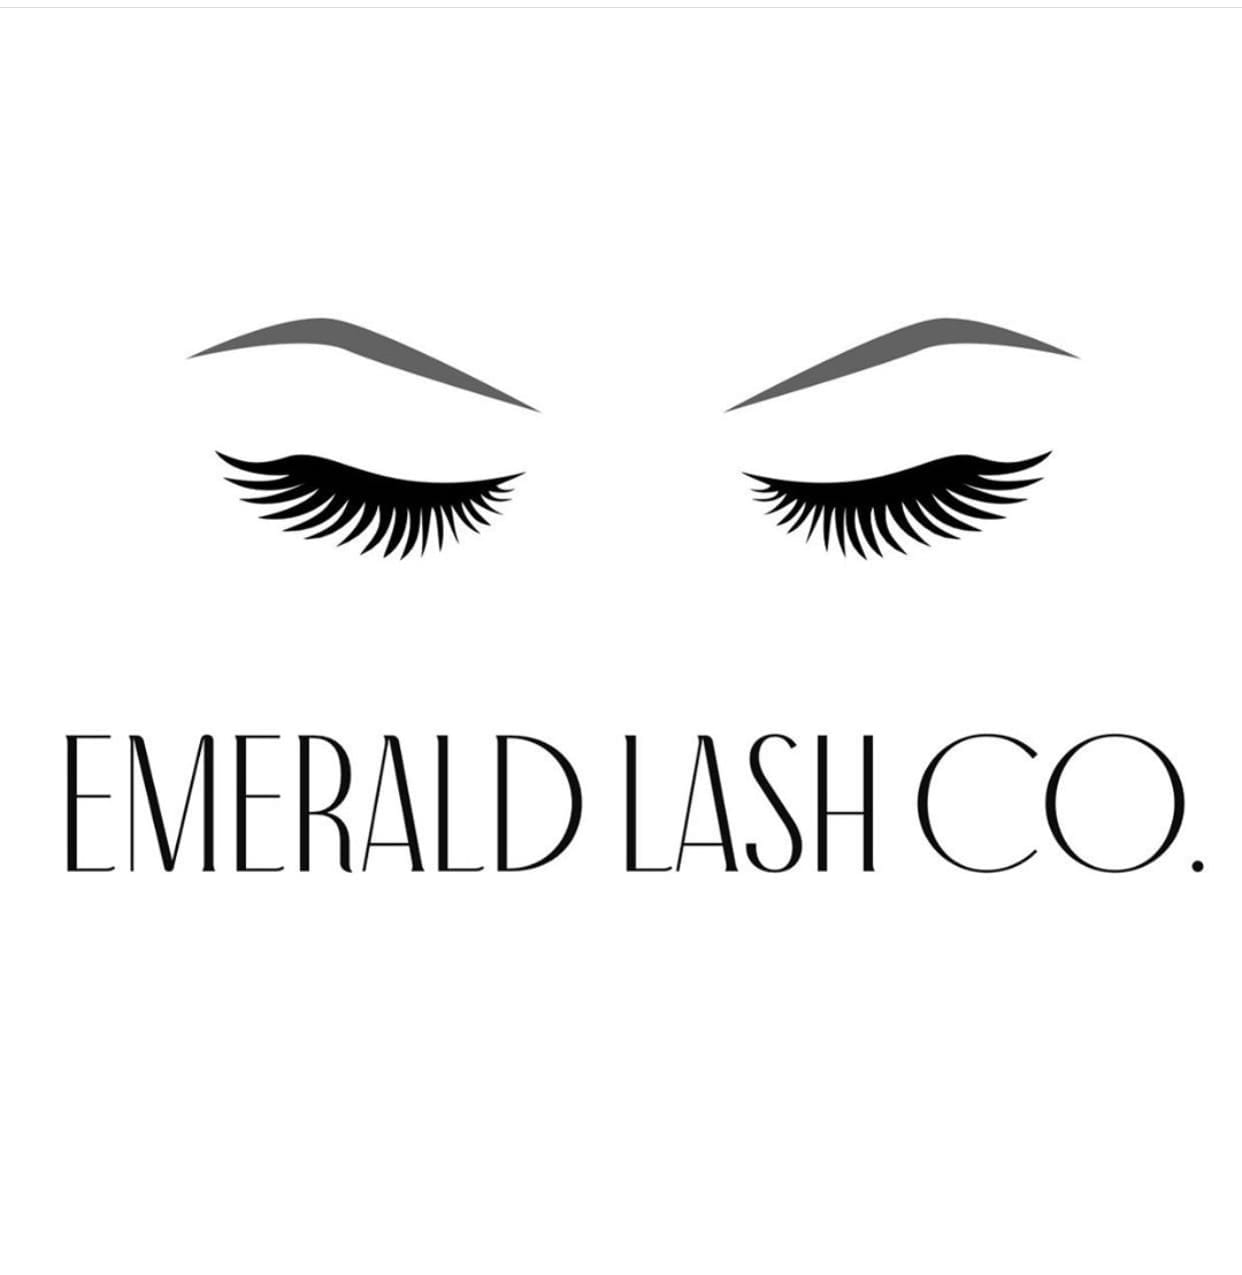 Emerald Lash Co.